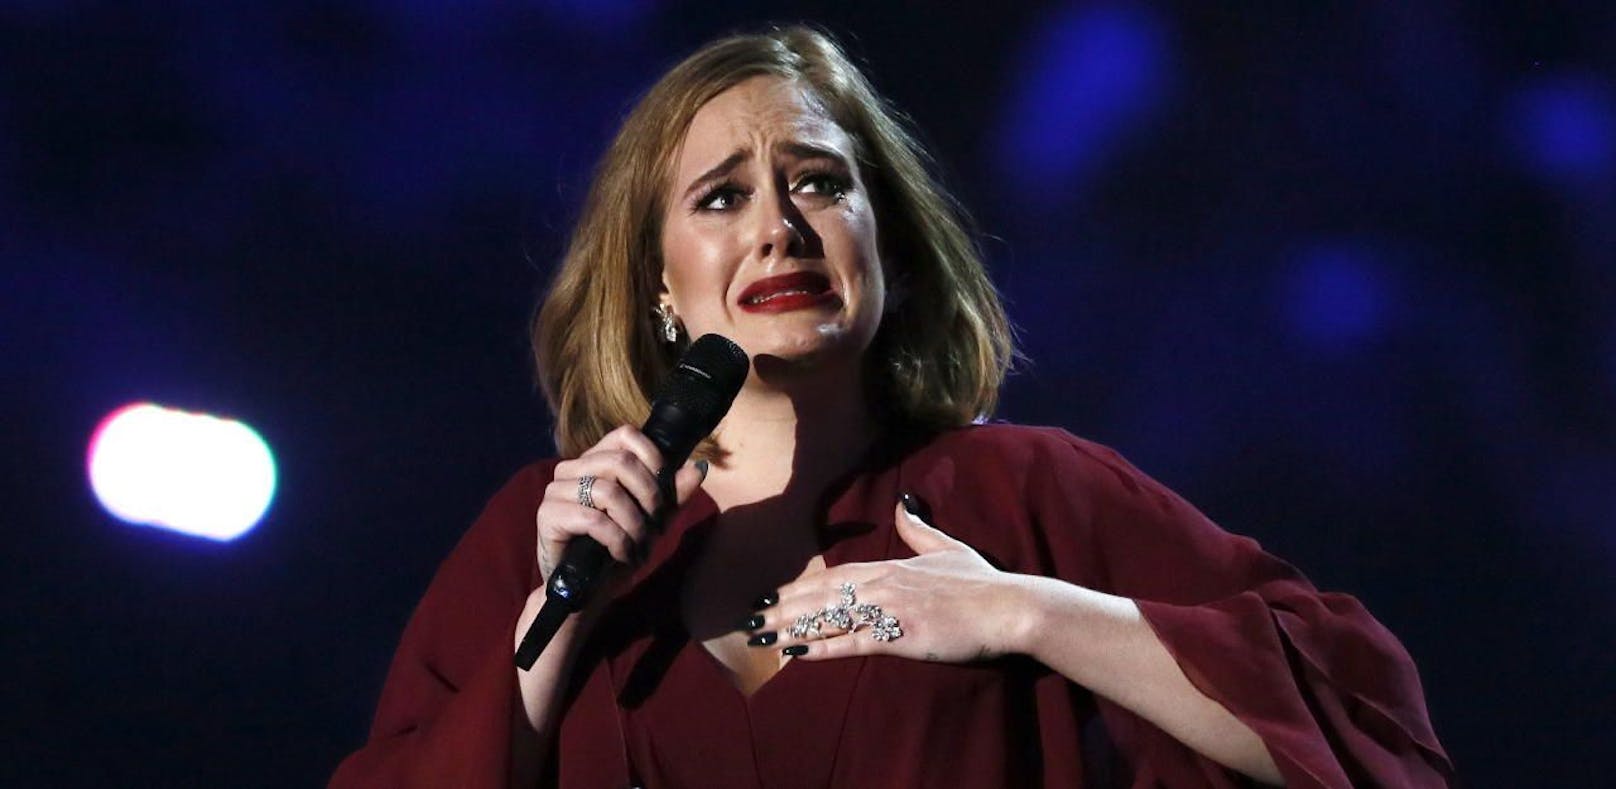 Darum jubeln die Fans über Adeles Trennung